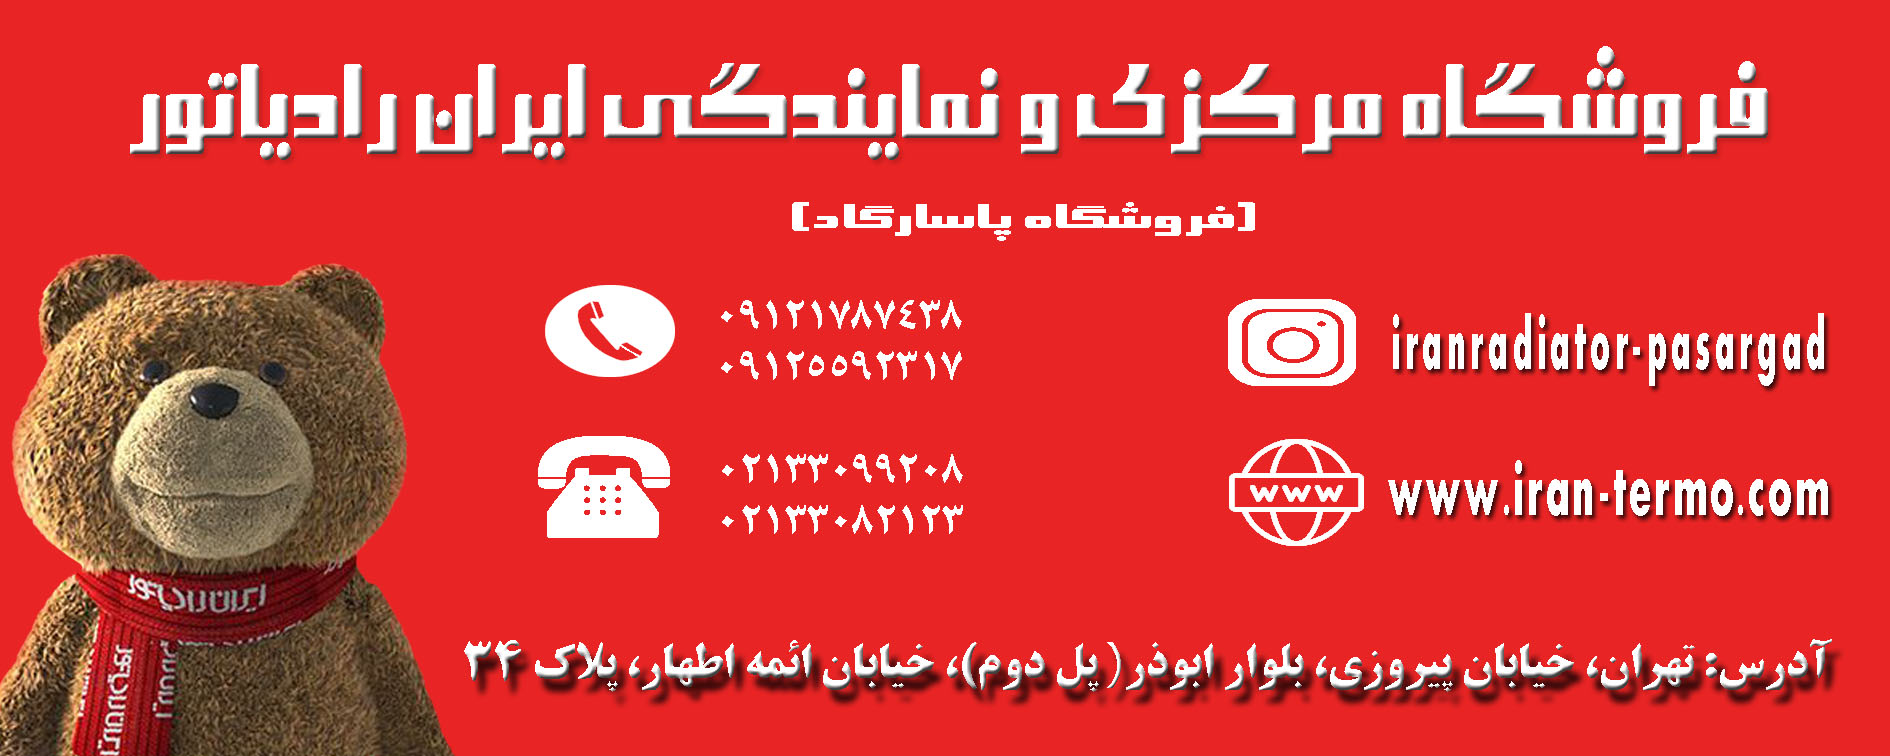 فروشگاه مرکزی و نمایندگی رسمی ایران رادیاتور (فروشگاه پاسارگاد)